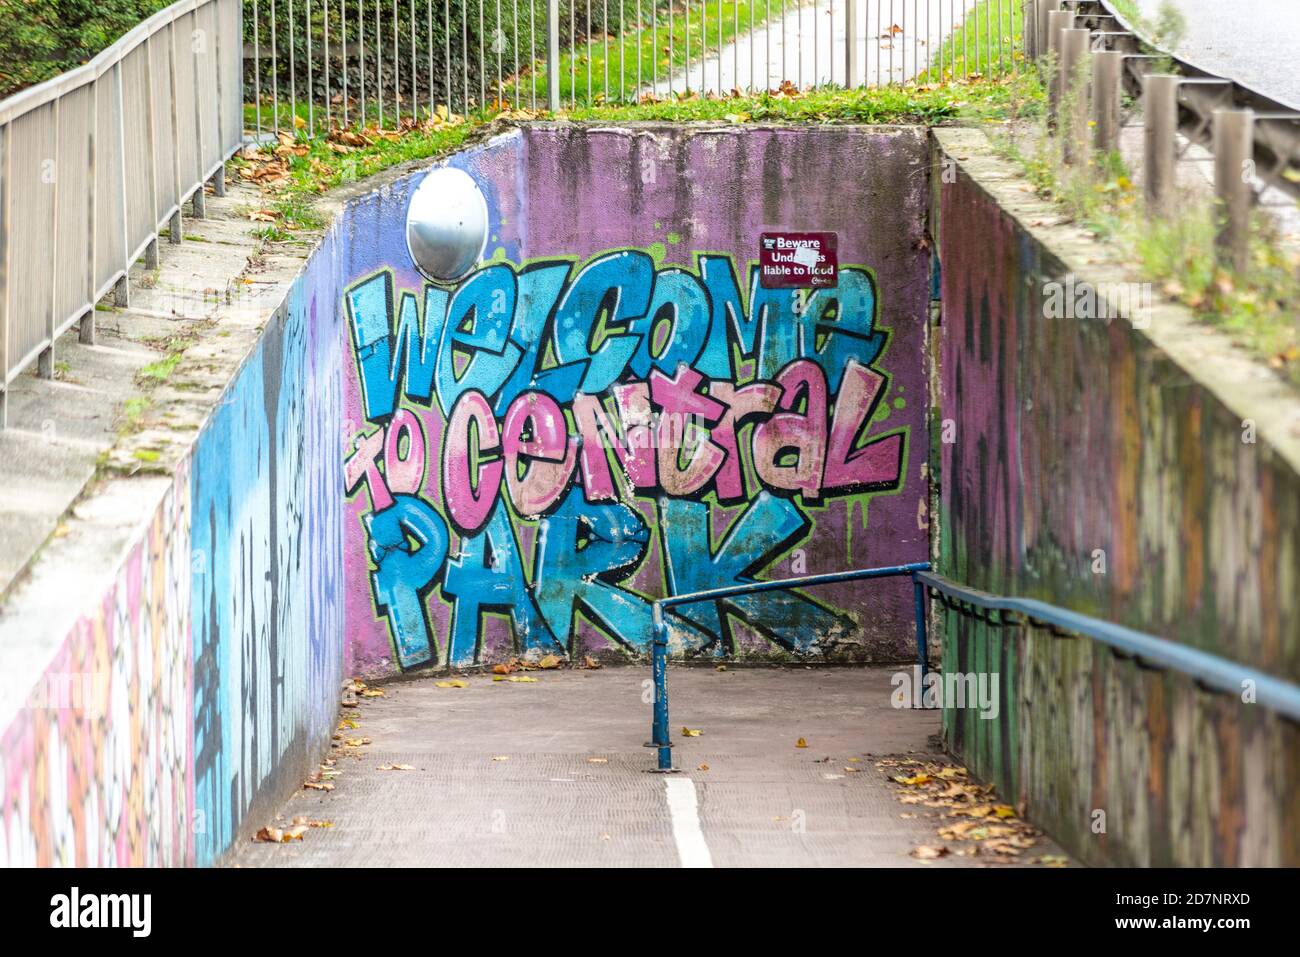 Willkommen im Central Park Graffiti-Stil Street Art auf der Unterführung, die zum Park in Chelmsford, Essex, Großbritannien führt. Unterirdischer Zugang zum städtischen Grünraum Stockfoto